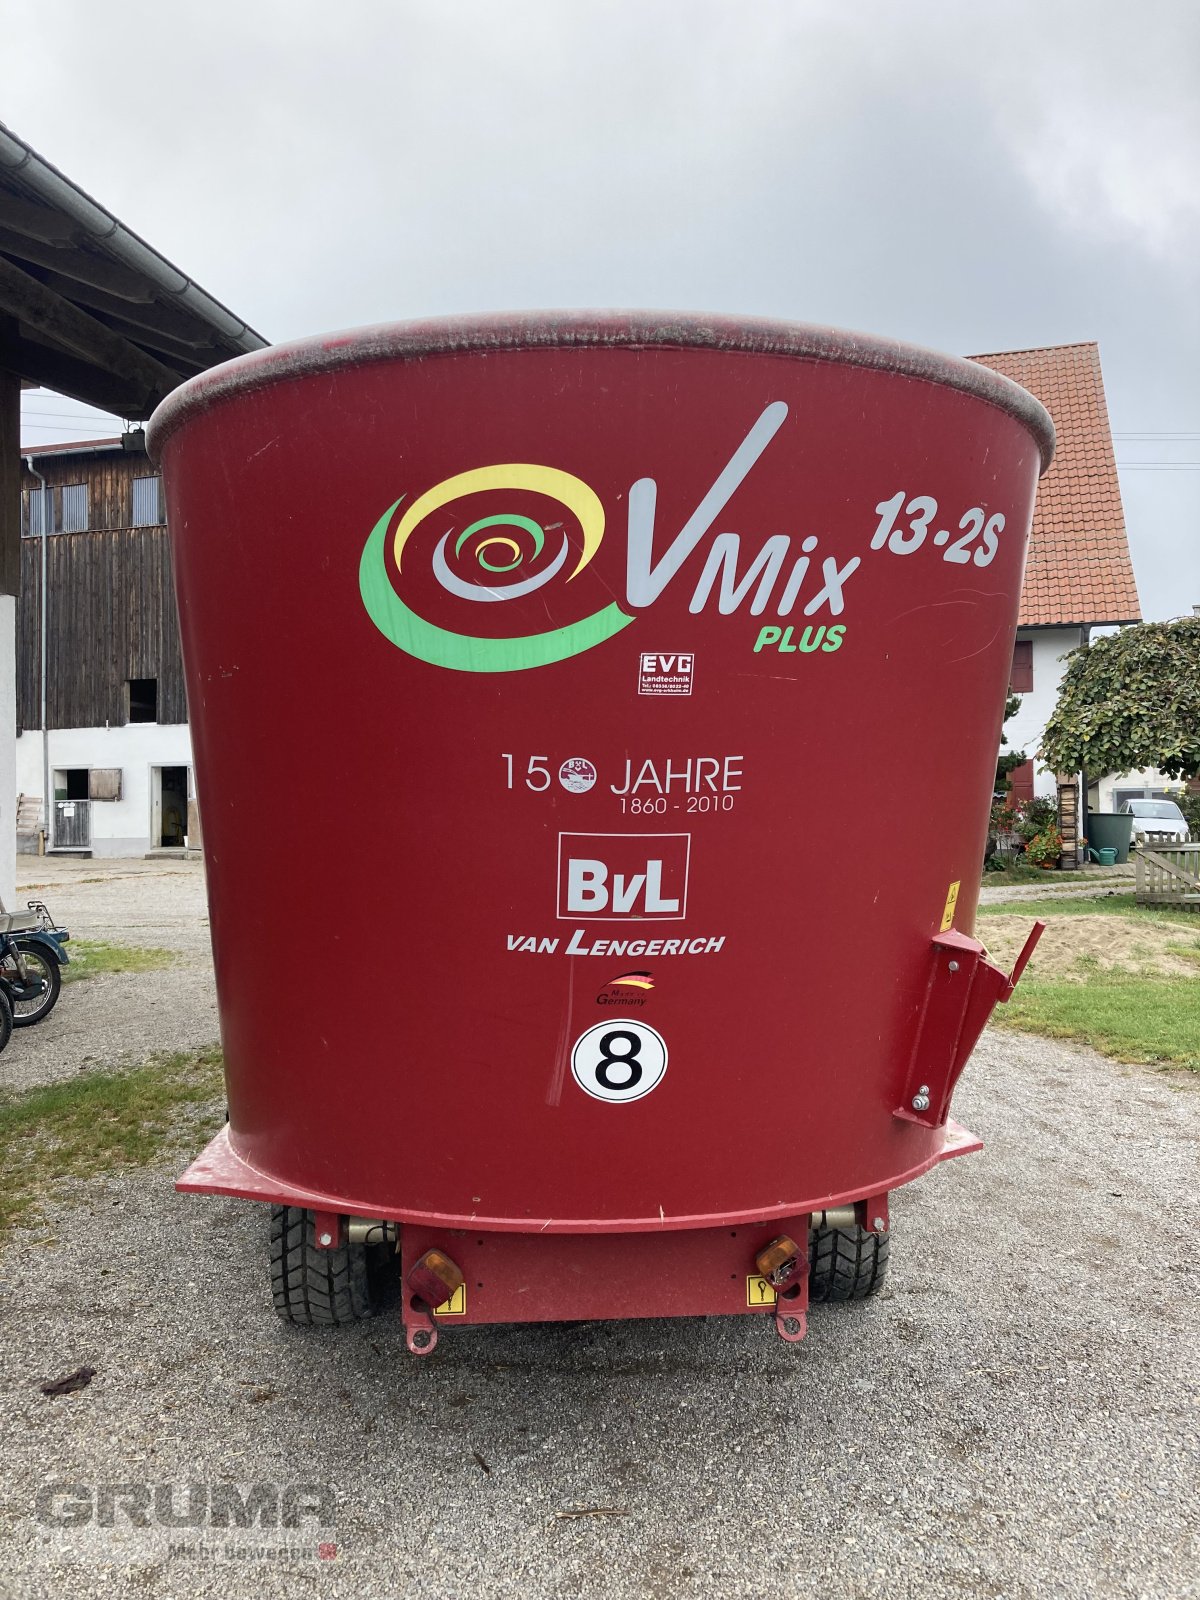 Futtermischwagen des Typs BVL V-Mix 13-2S, Gebrauchtmaschine in Egg a.d. Günz (Bild 3)